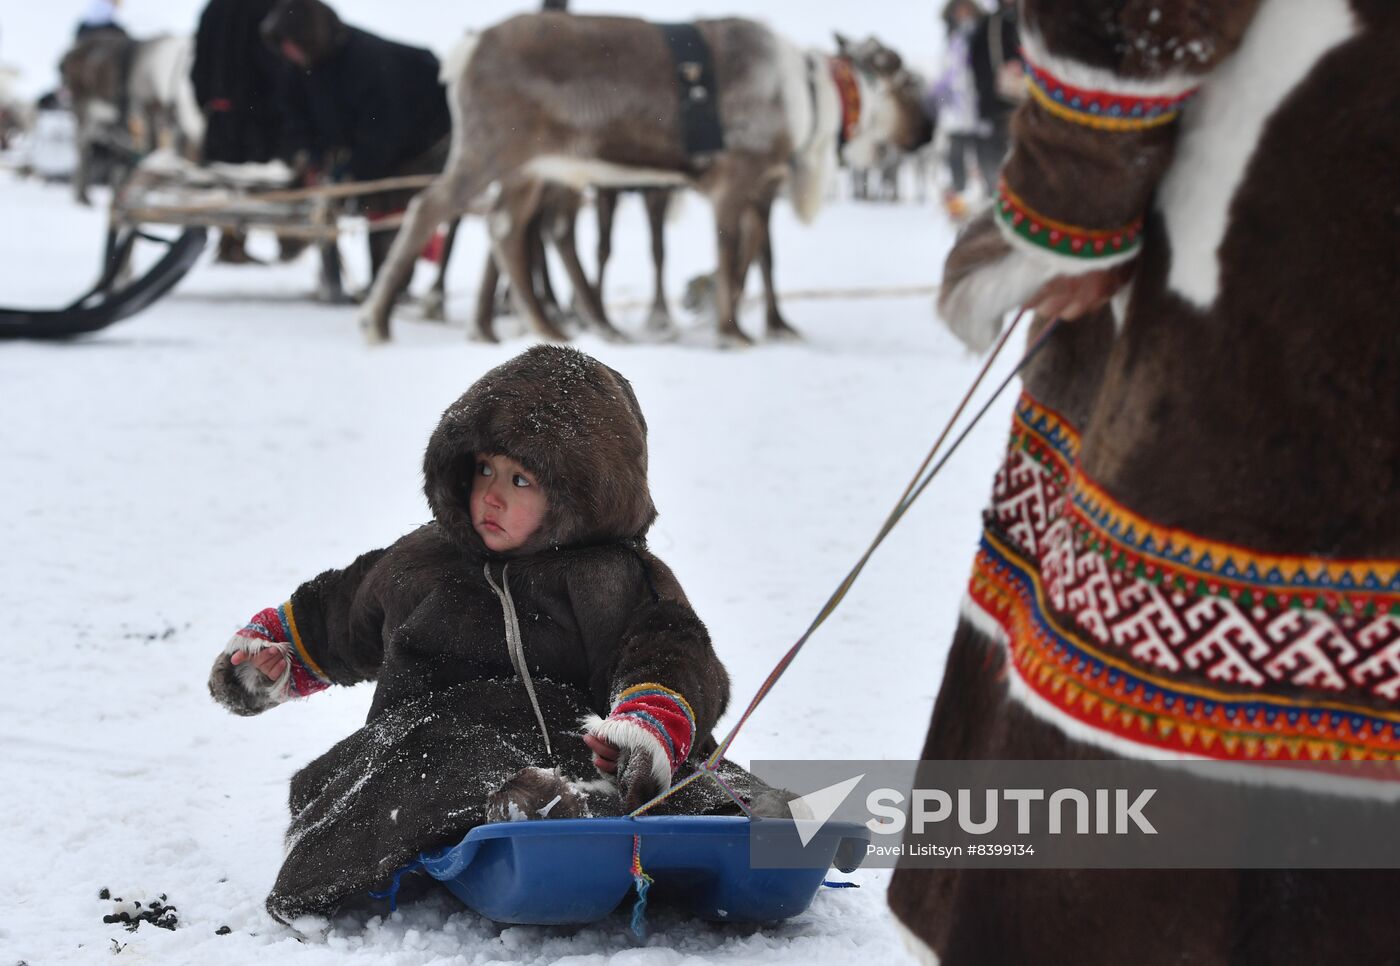 Russia Reindeer Herders' Day | Sputnik Mediabank